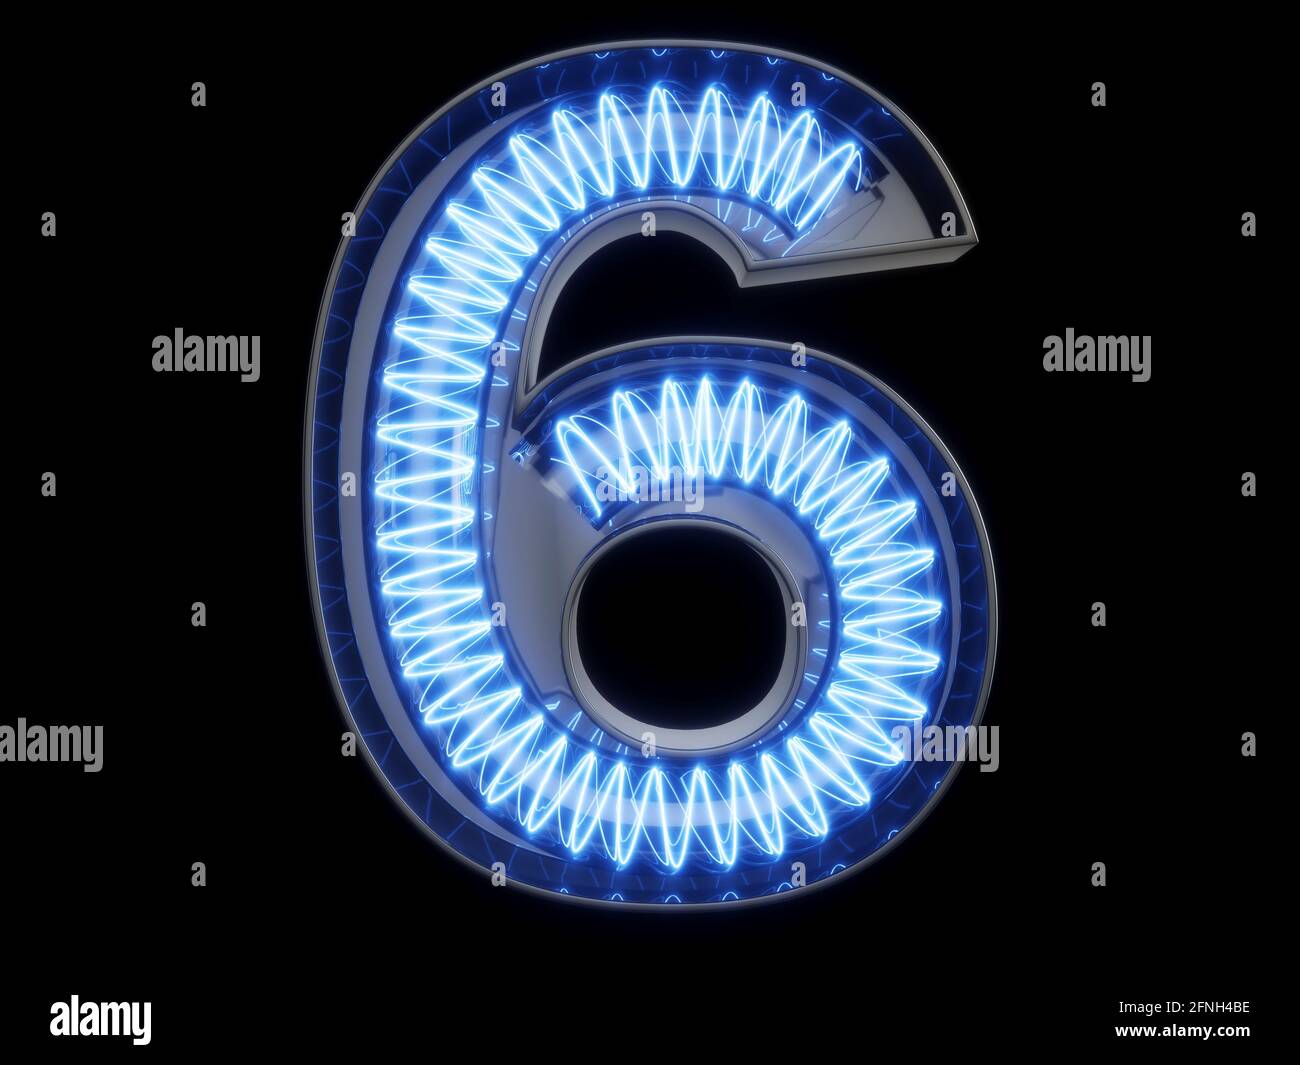 Ampoule en forme de spirale lumineuse caractère alphabétique 6 six caractères. Vue de face symbole 6 allumé sur fond noir. illustration du rendu 3d Banque D'Images